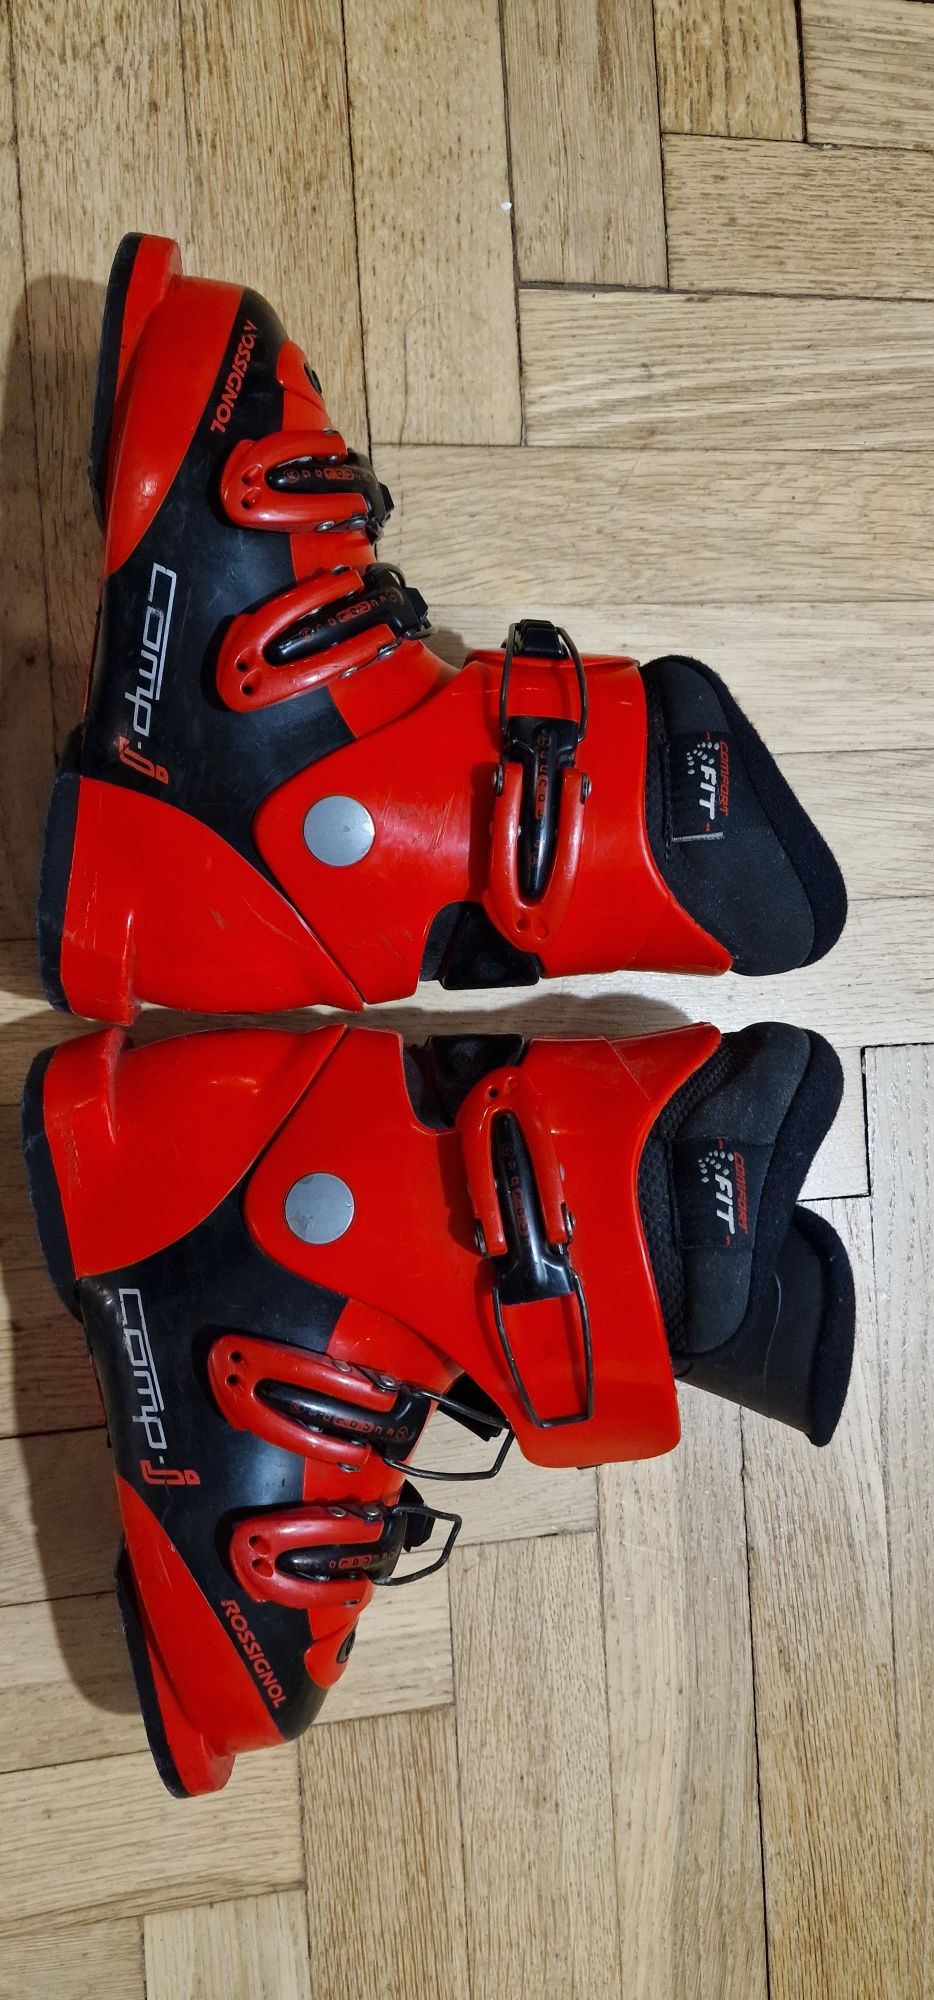 Buty narciarskie juniorskie Rossignol Comp rozmiar 30 (wkładka 19,5cm)